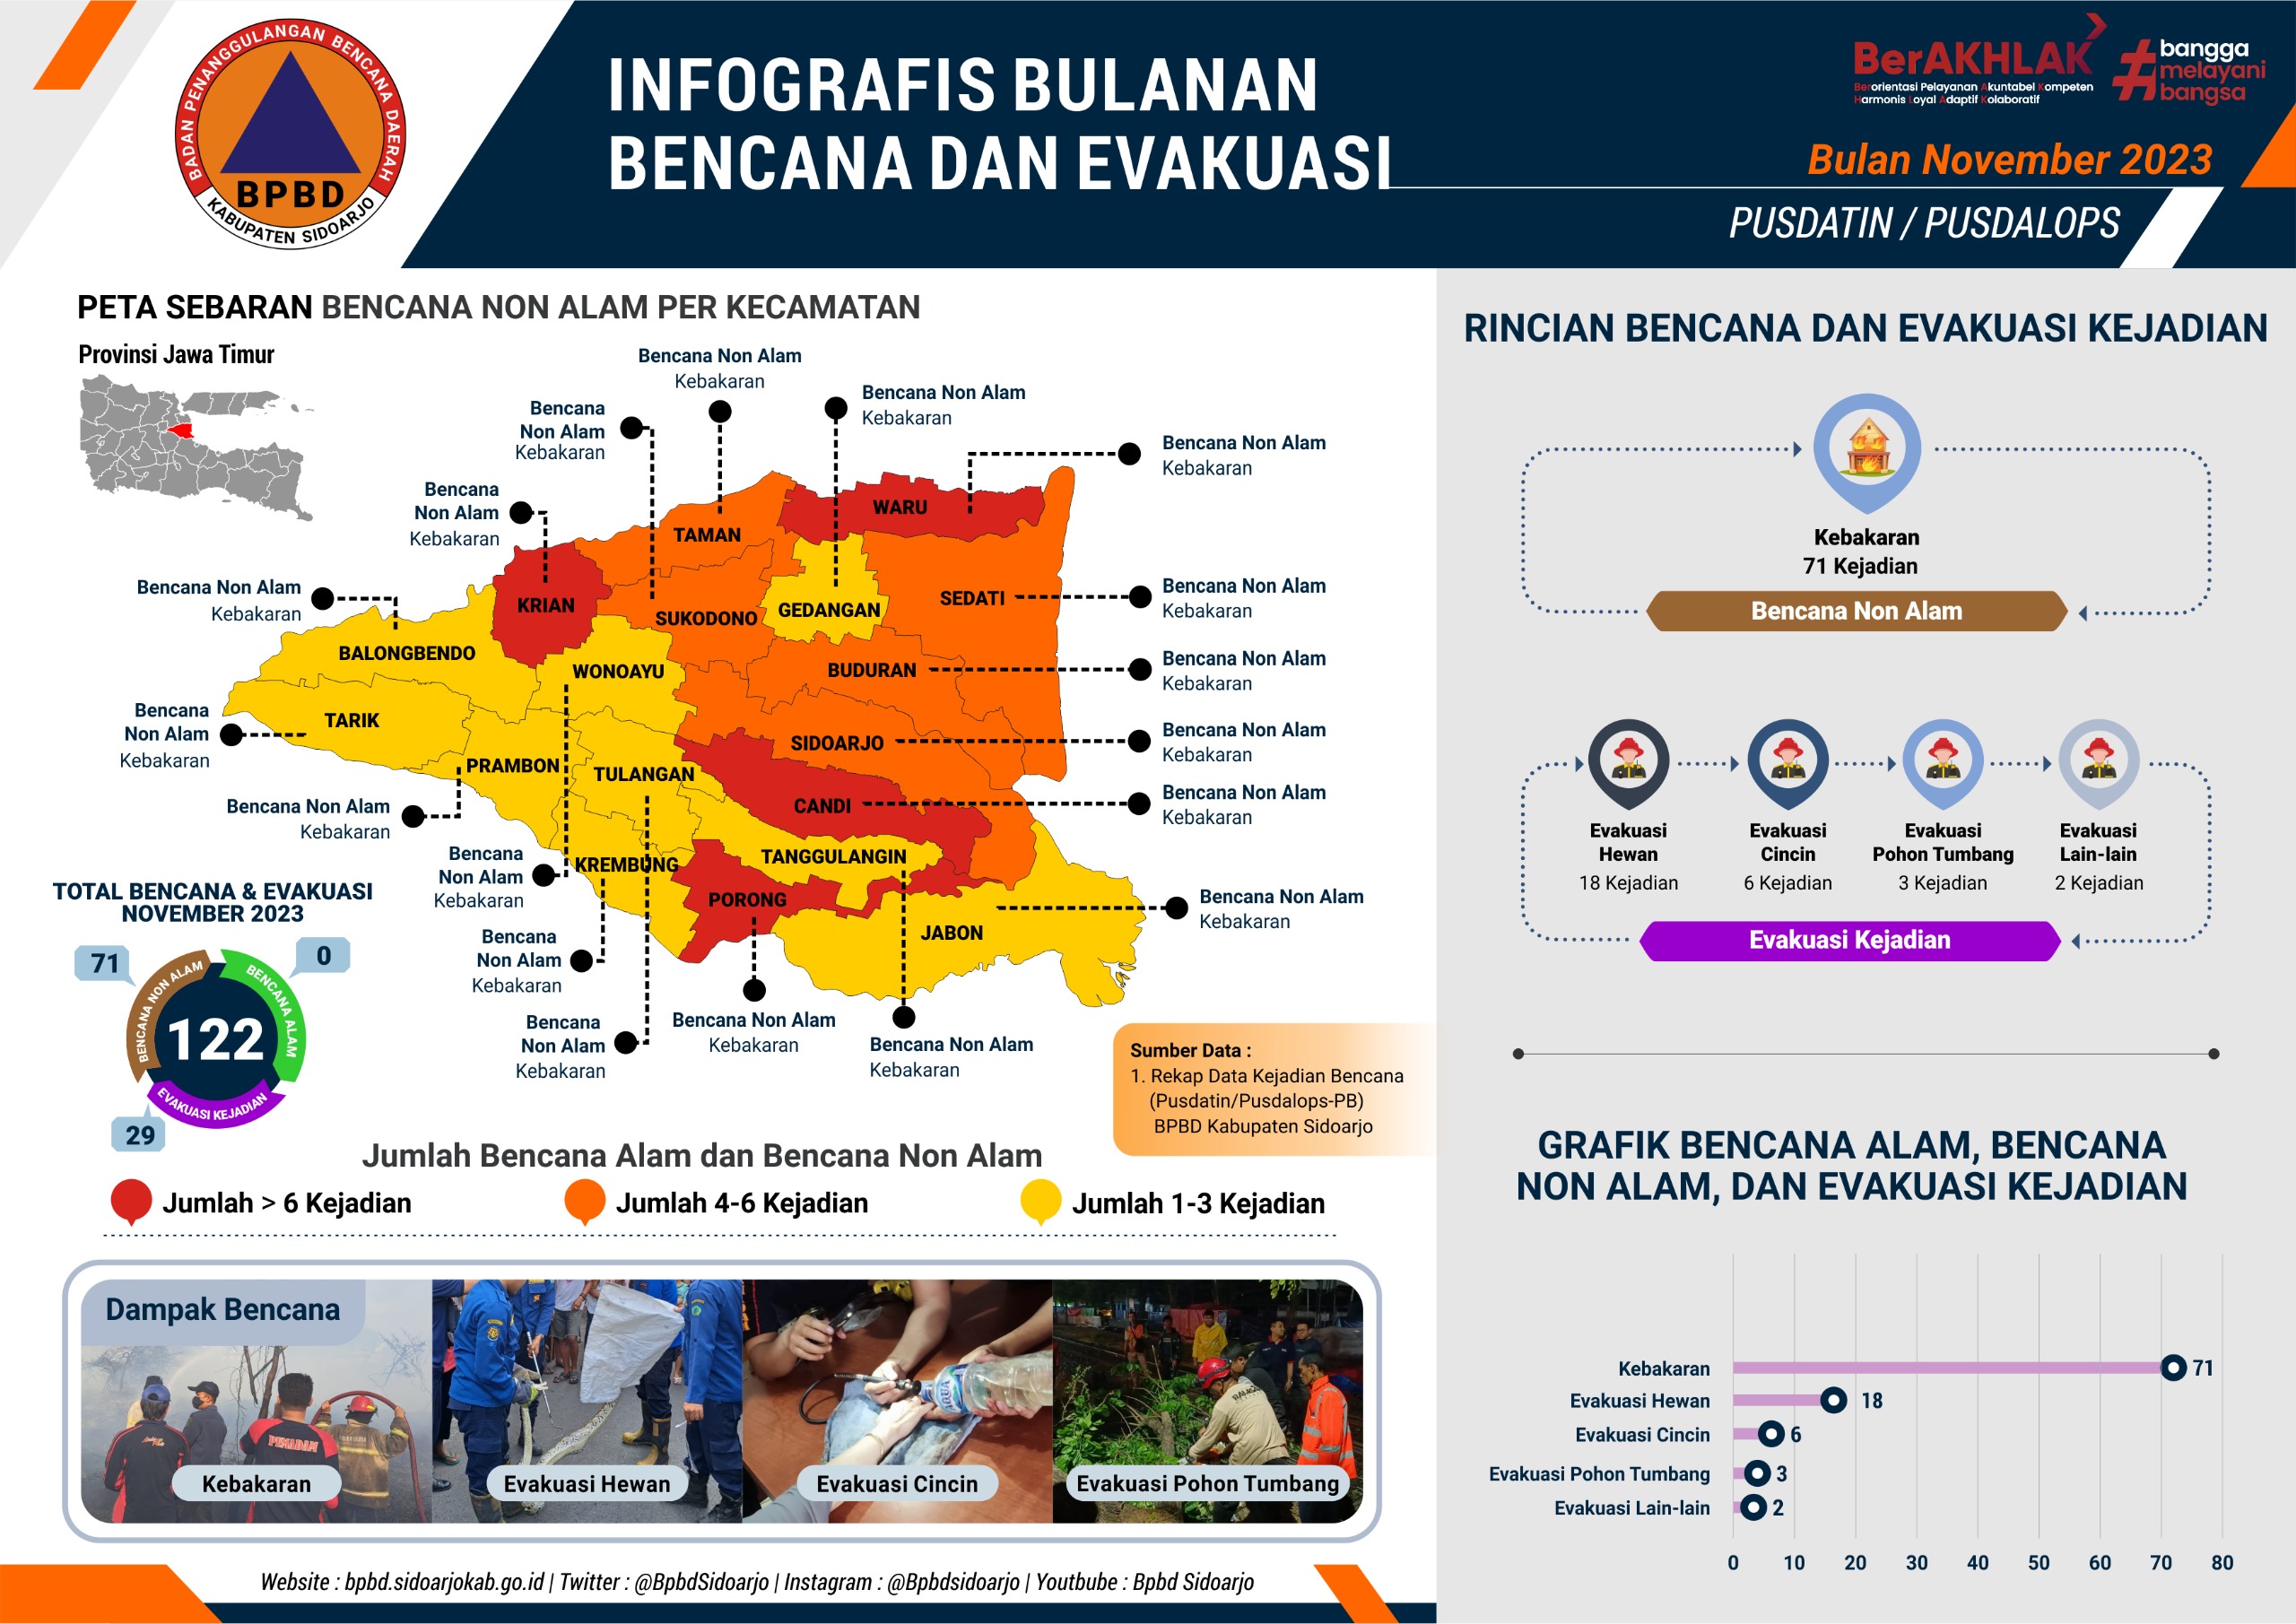 Infografis Bulanan Bencana dan Evakuasi Bulan Januari – November 2023